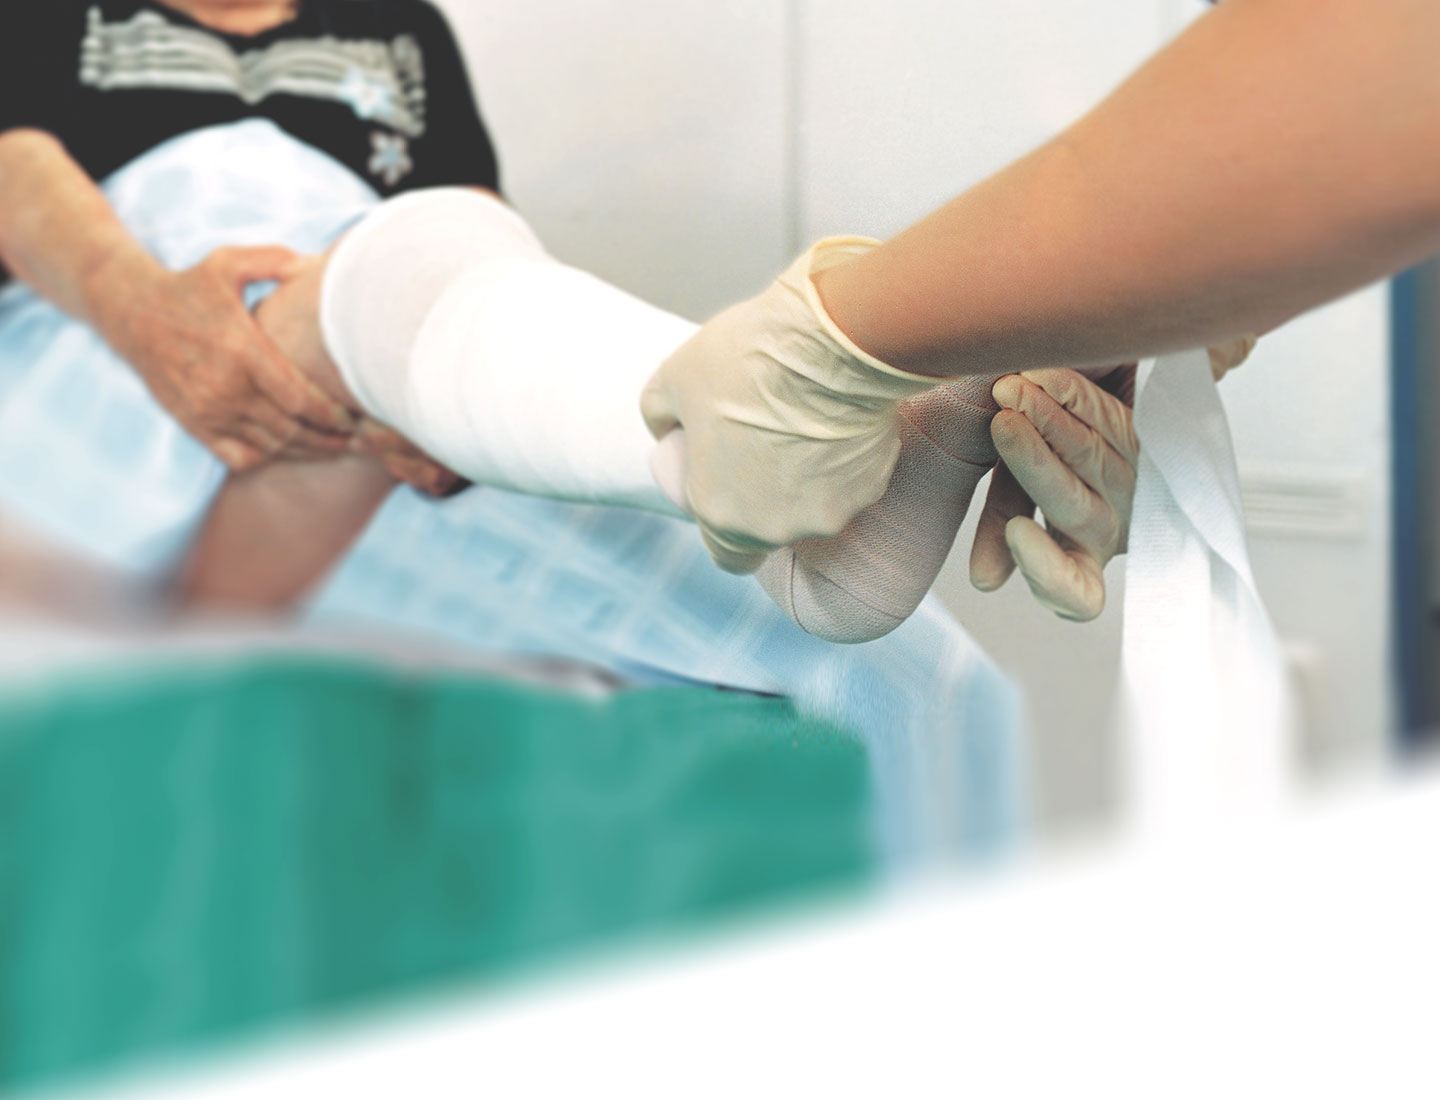 Arzthelferin verbindet Bein und Fuß einer Seniorin